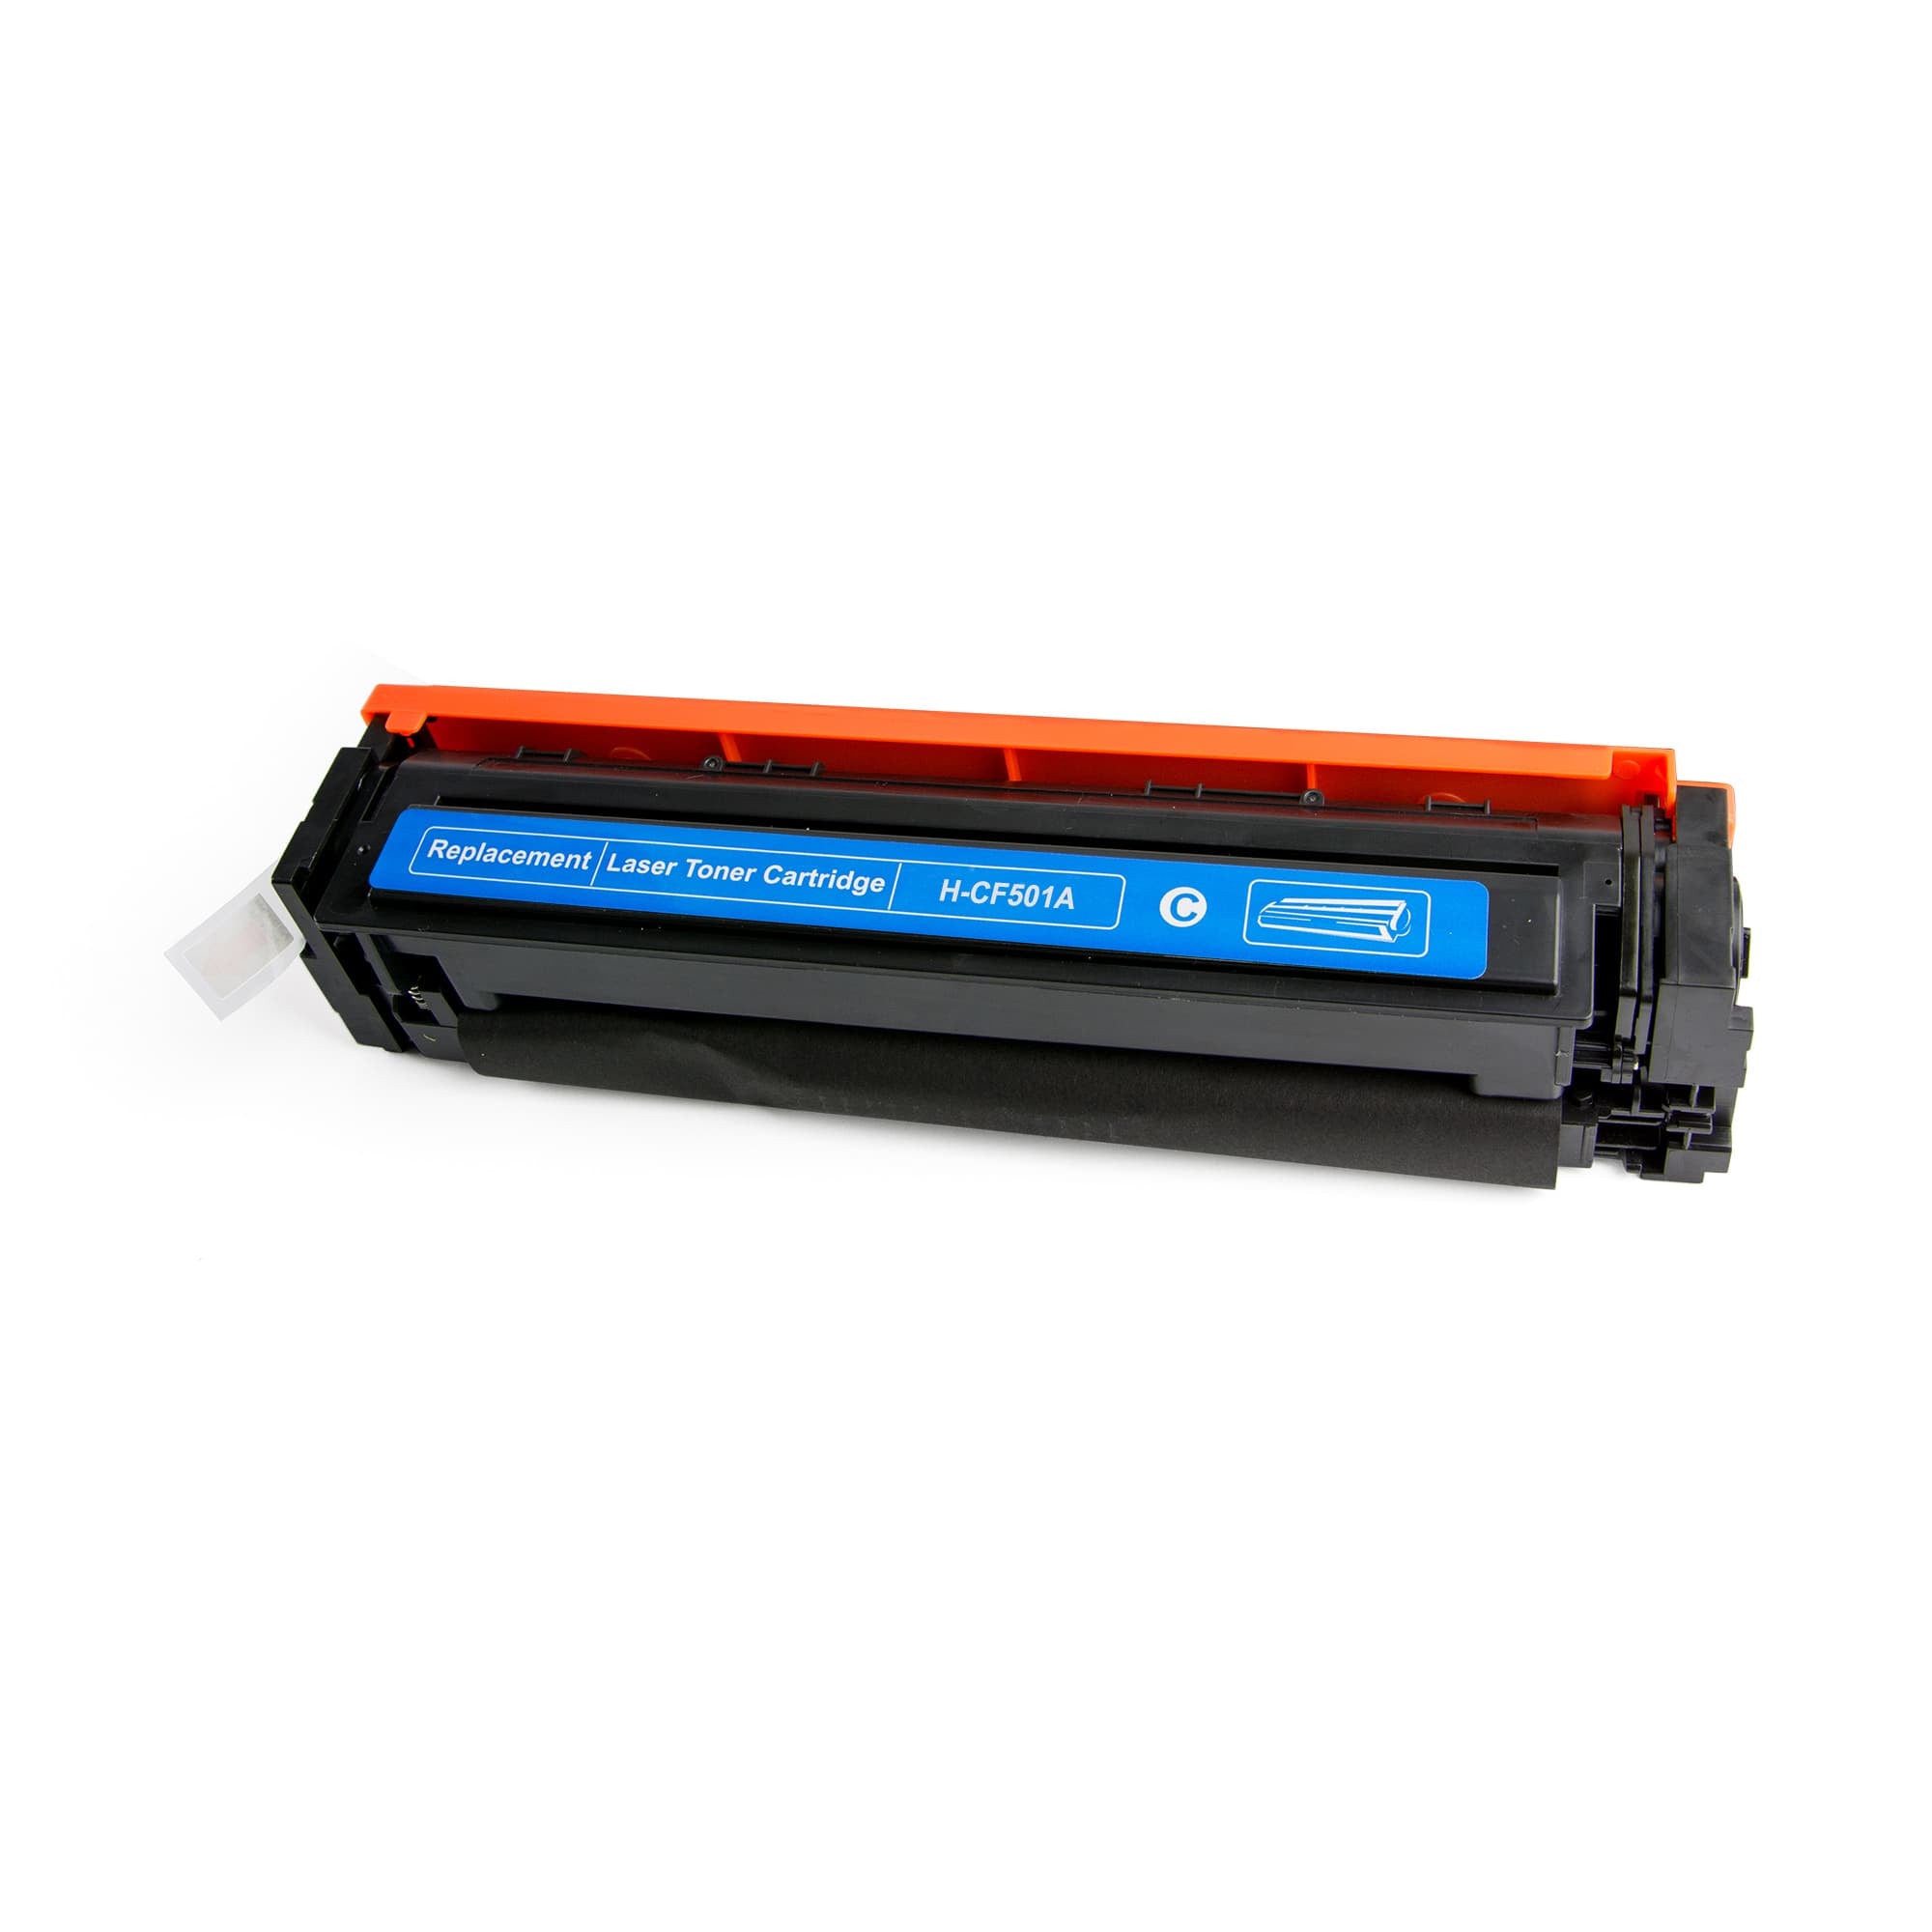 Compatible Toner Cartridge For HP 202A/CF500A/CF501A/CF502A/CF503A - Cyan